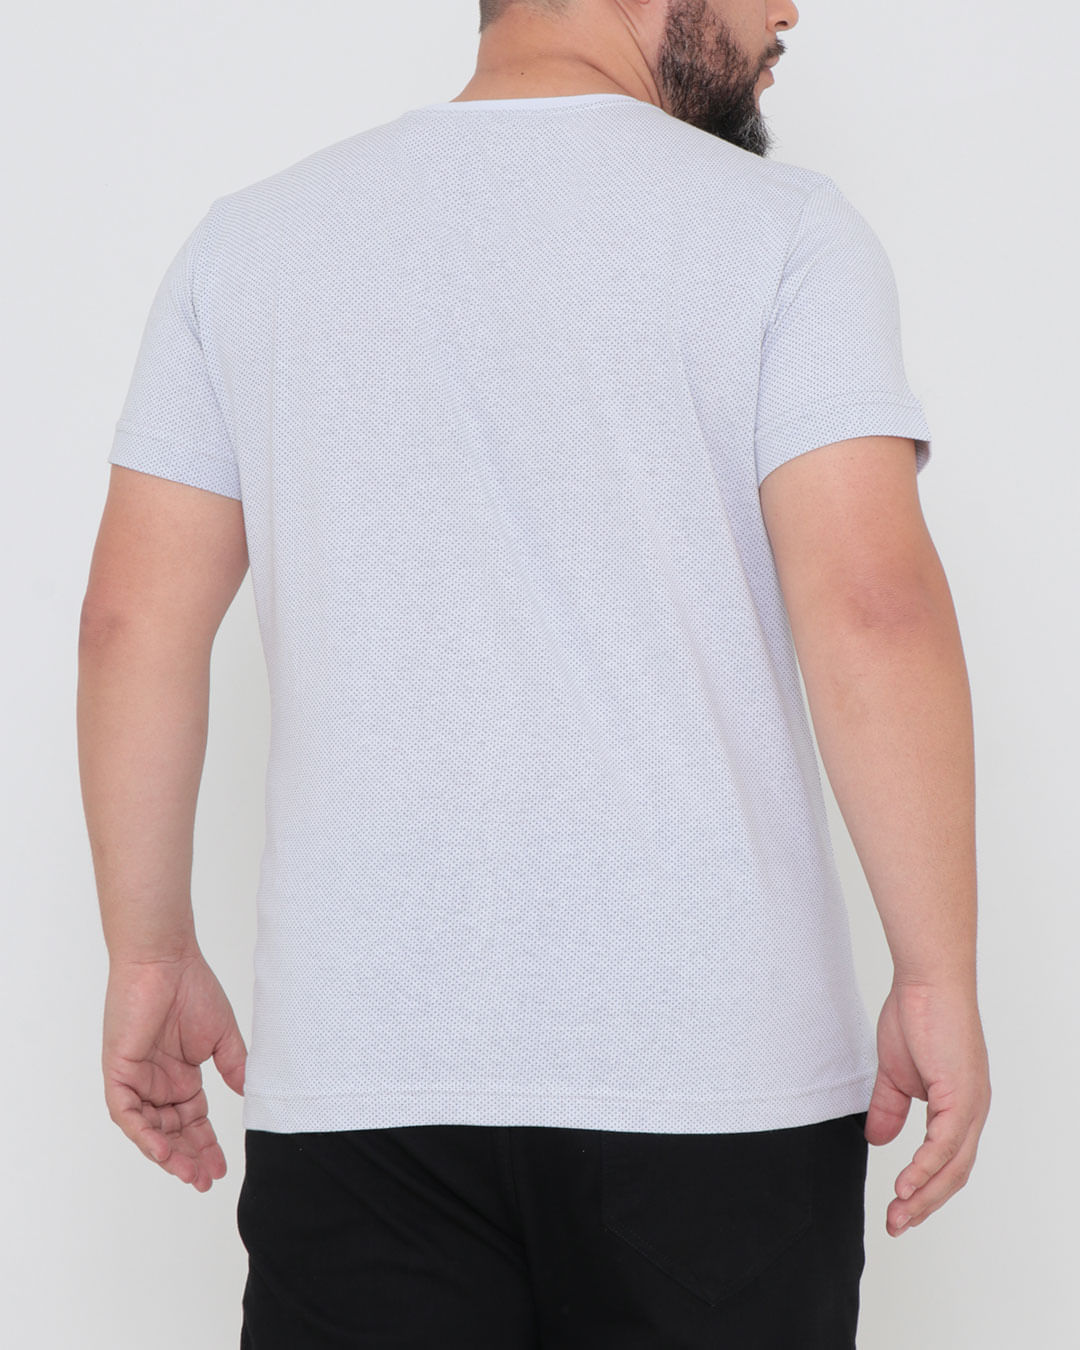 Camiseta-Plus-Size-Estampada-Polo-Branca